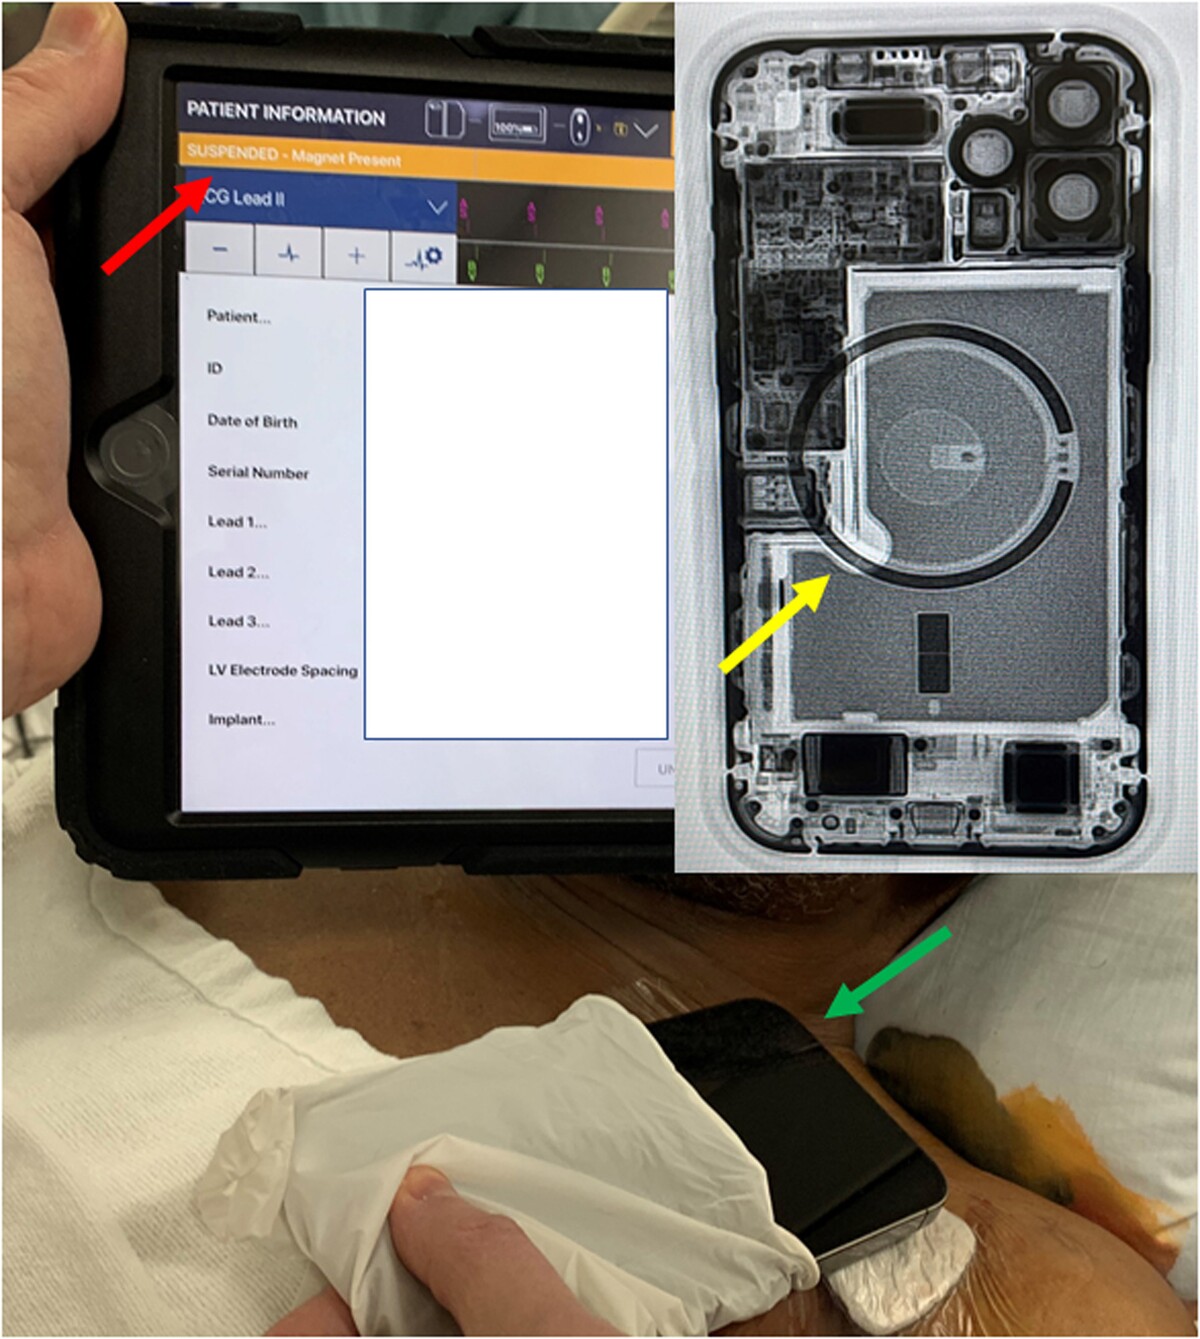 Štúdia ukazuje ako kardiostimulátor pozastavil činnosť pre prítomnosť magnetu. Pritom mal pacient iba iPhone 12 na hrudníku.